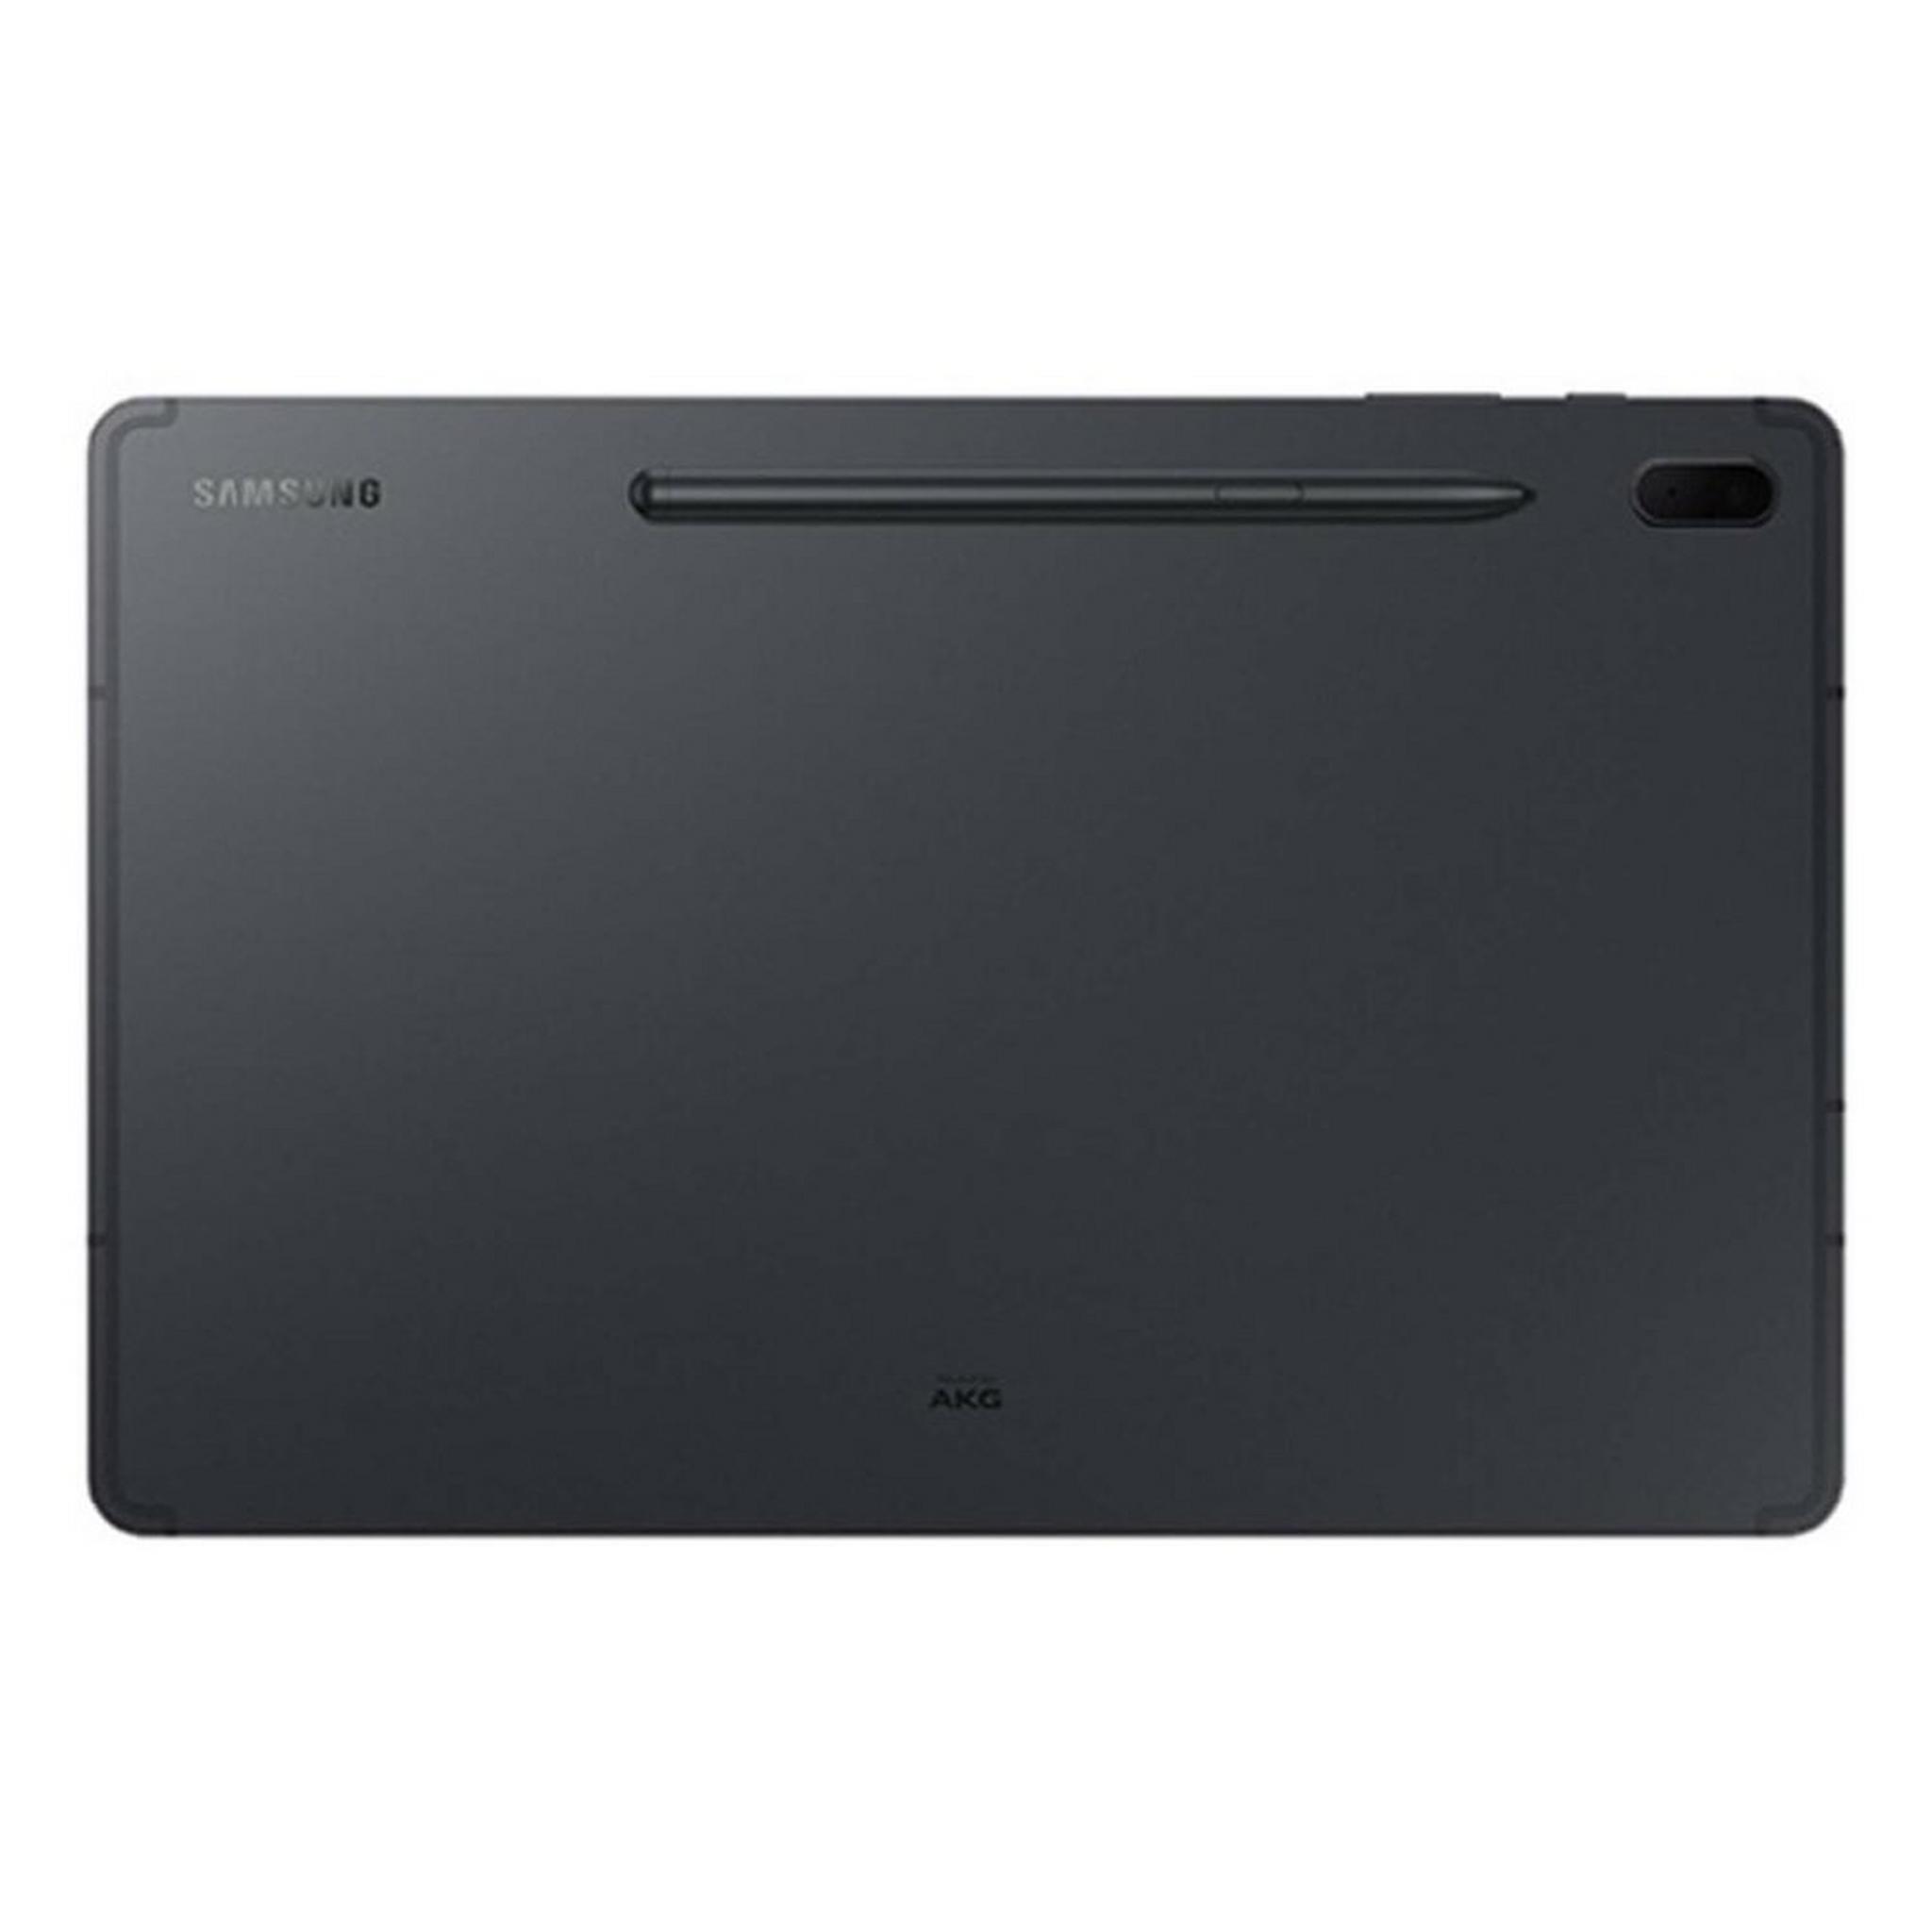 Samsung Galaxy Tab S7 FE 64GB Wi-Fi 12.4" Tablet - Black